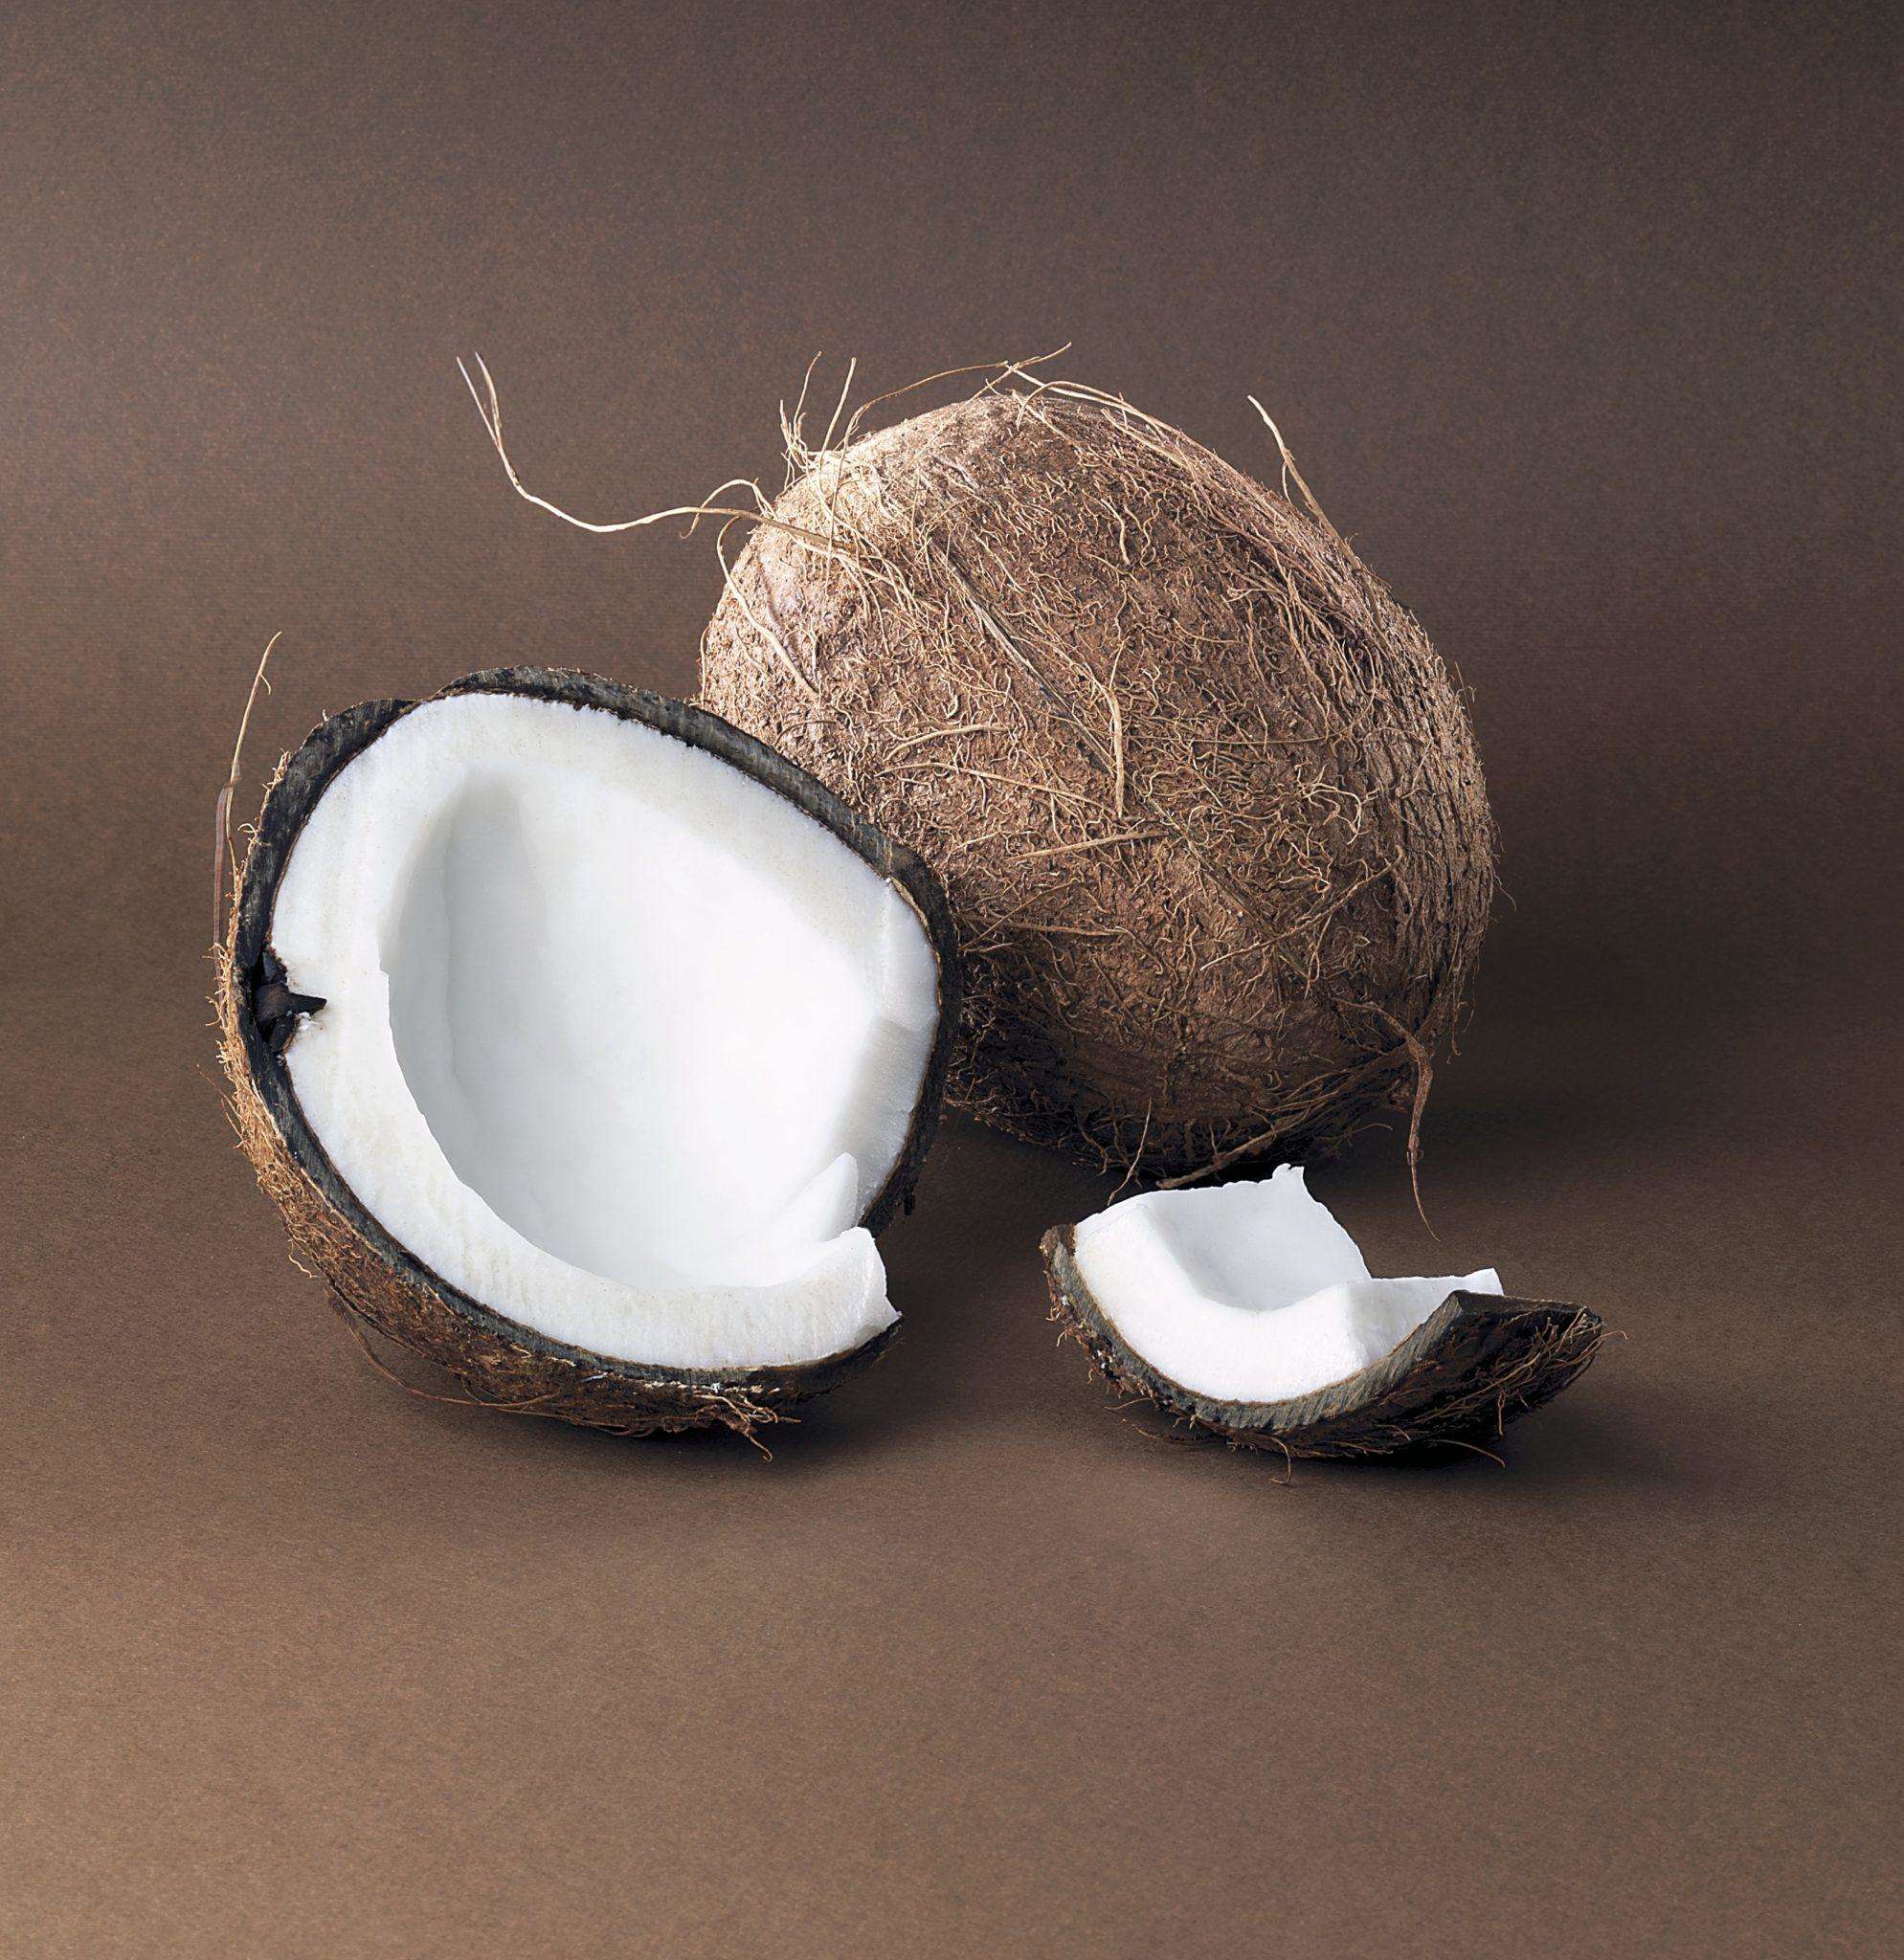 नारियल निकल जाए खराब तो खुल जाती है किस्मत